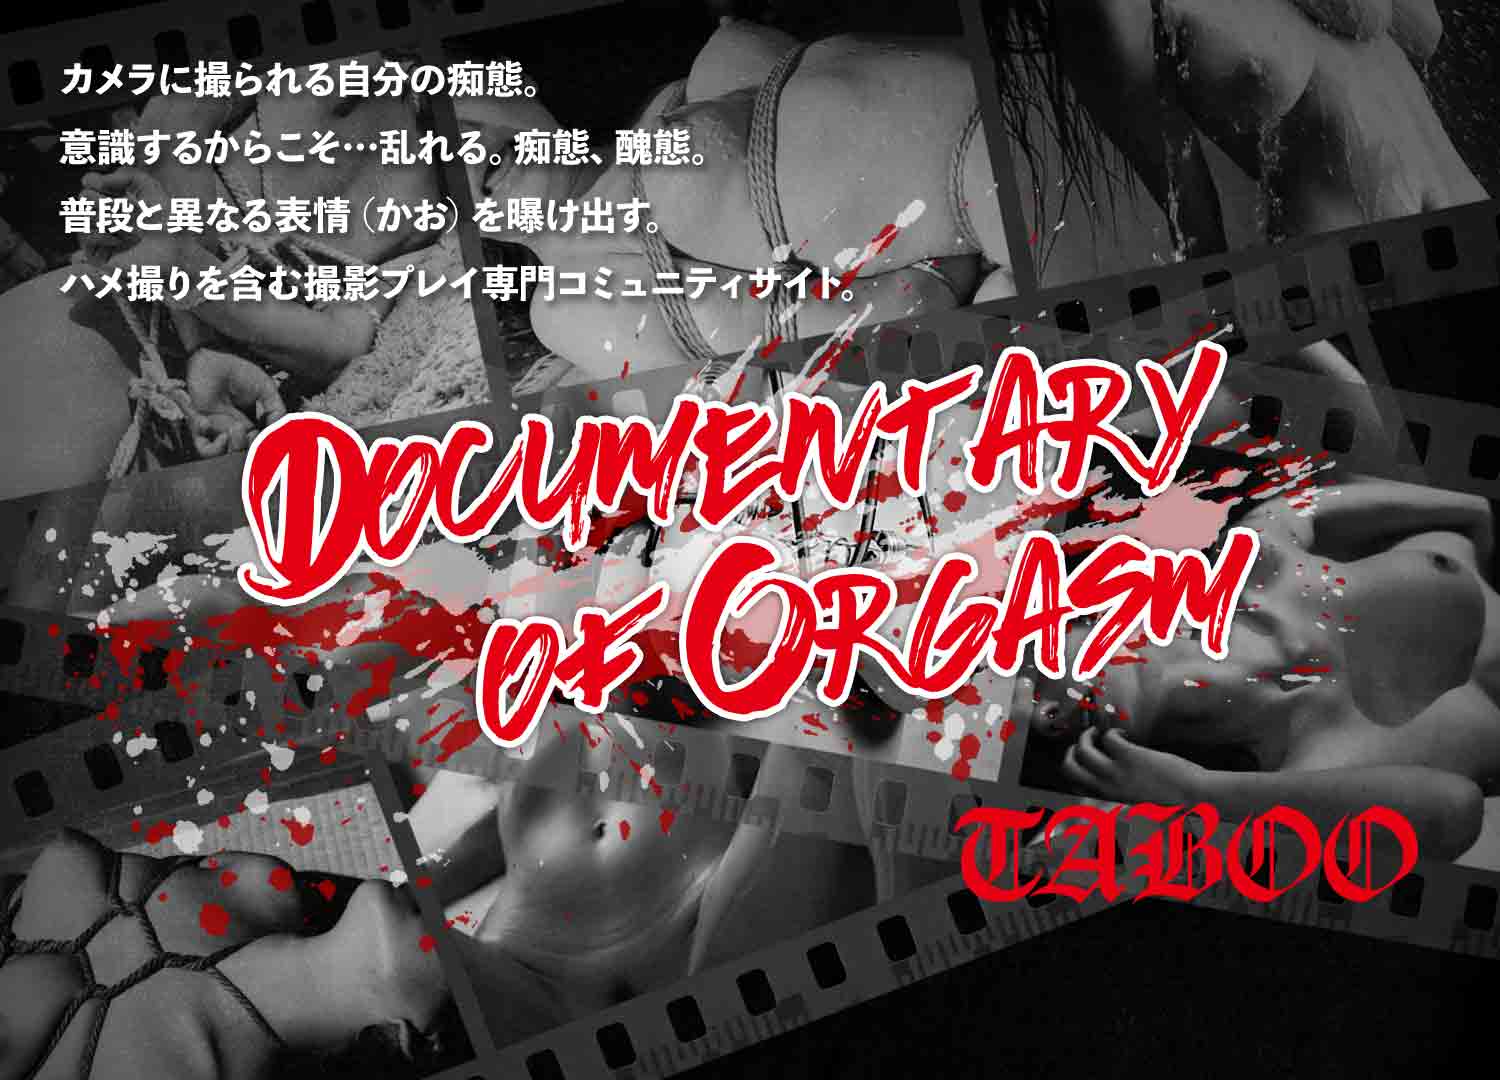 TABOO - Documentary of Orgasm